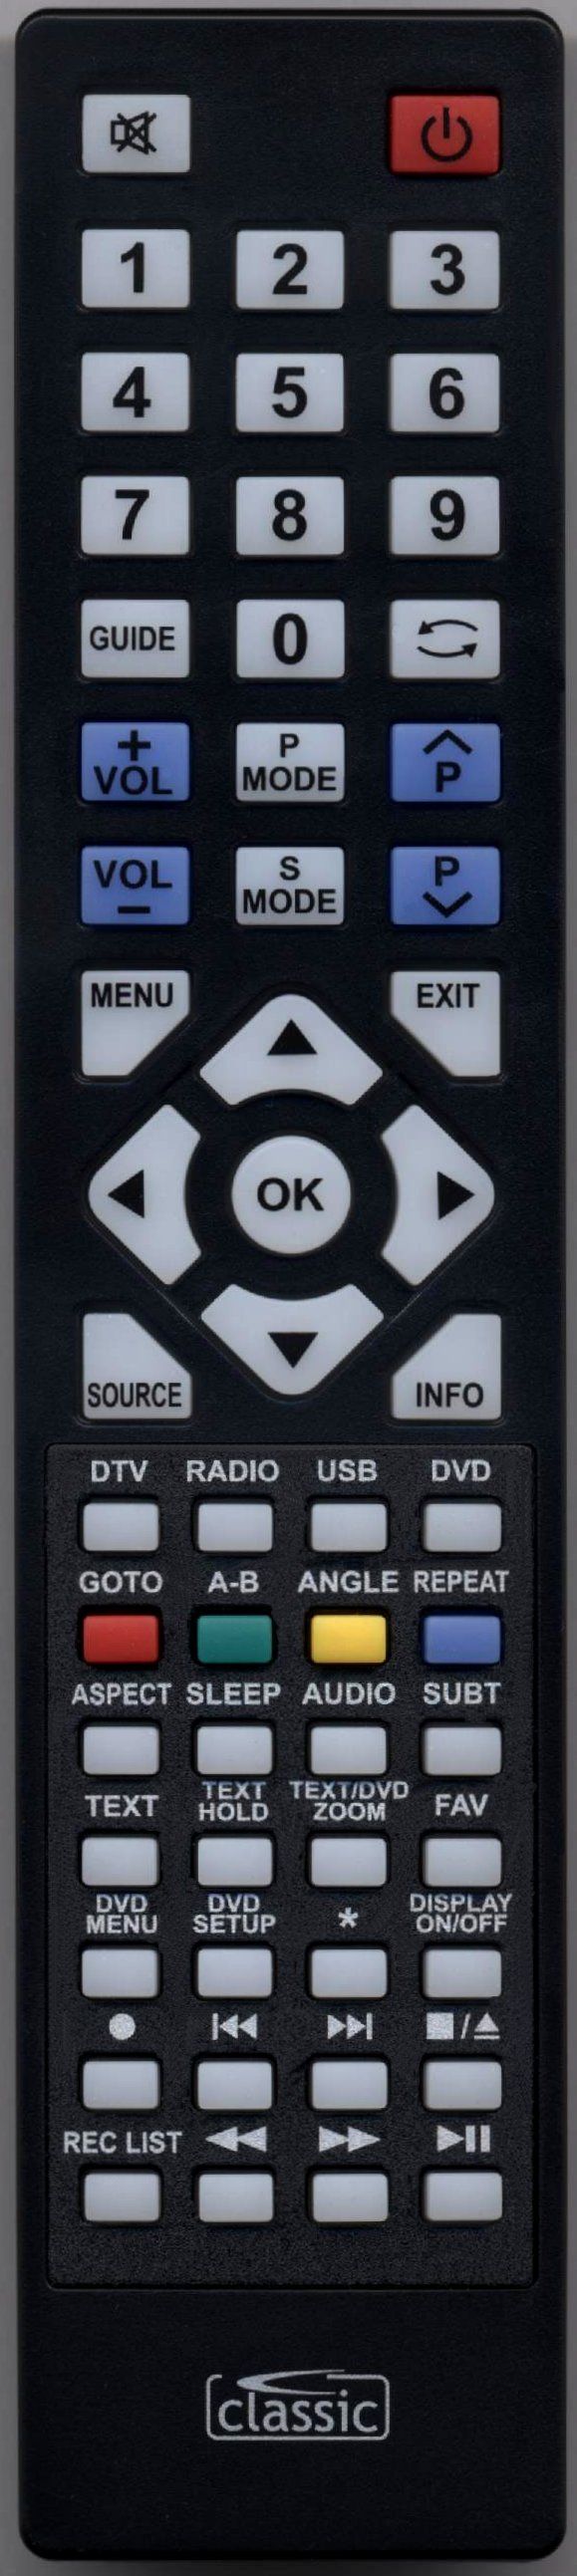 TECHNIKA 22E21W-FHD-DVD Remote Control Alternative